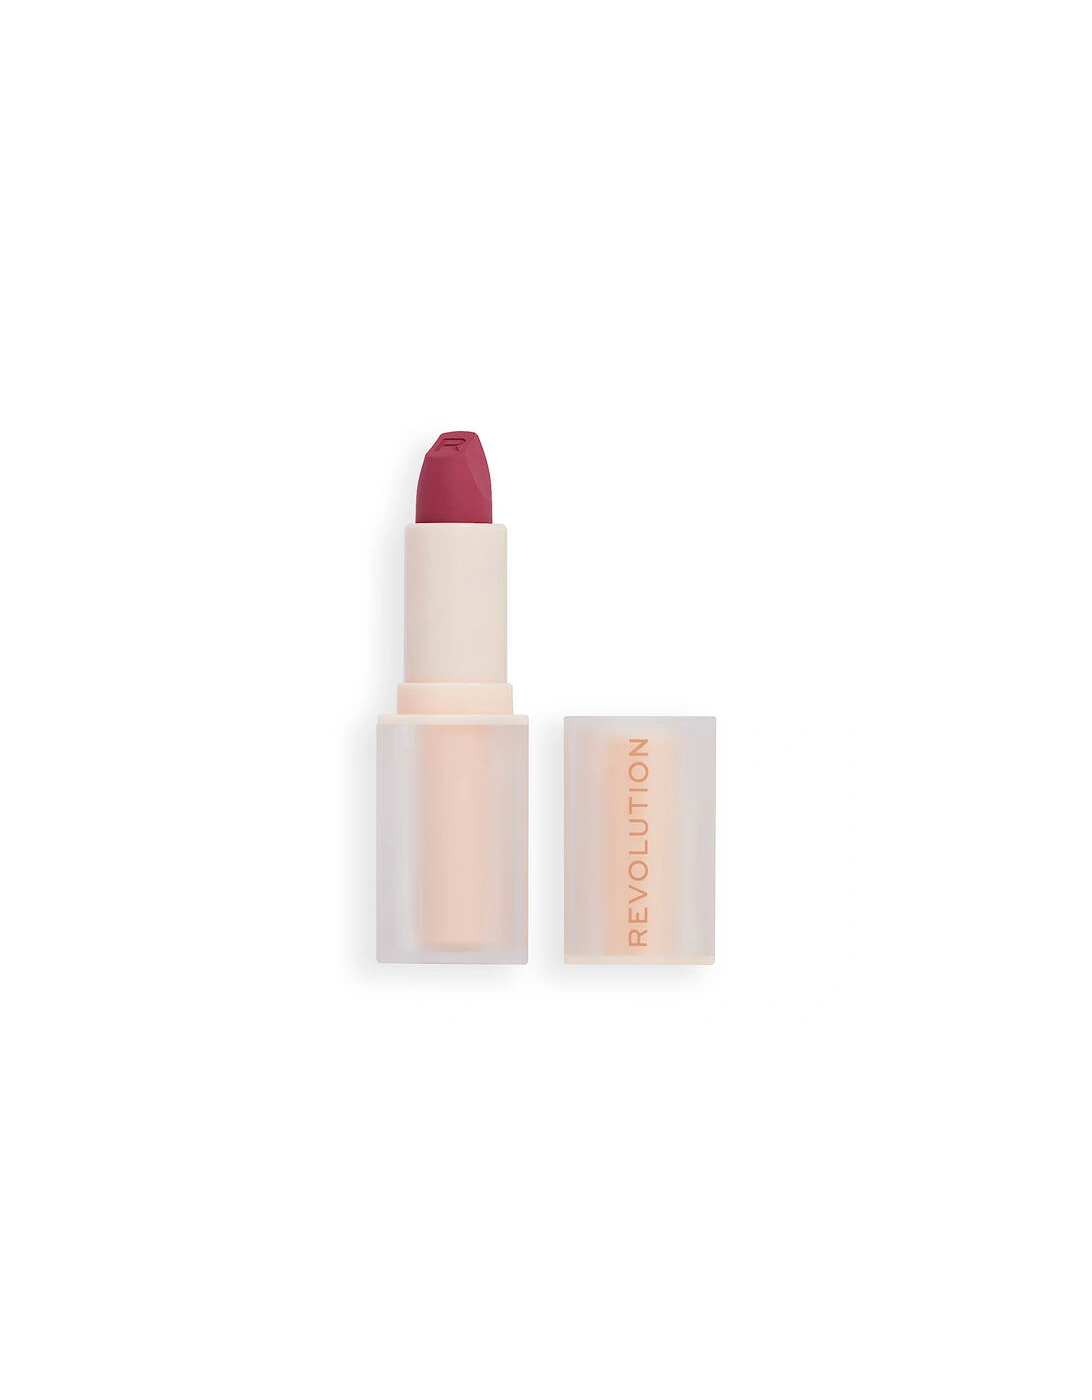 Makeup Lip Allure Soft Satin Lipstick Berry Boss, 2 of 1